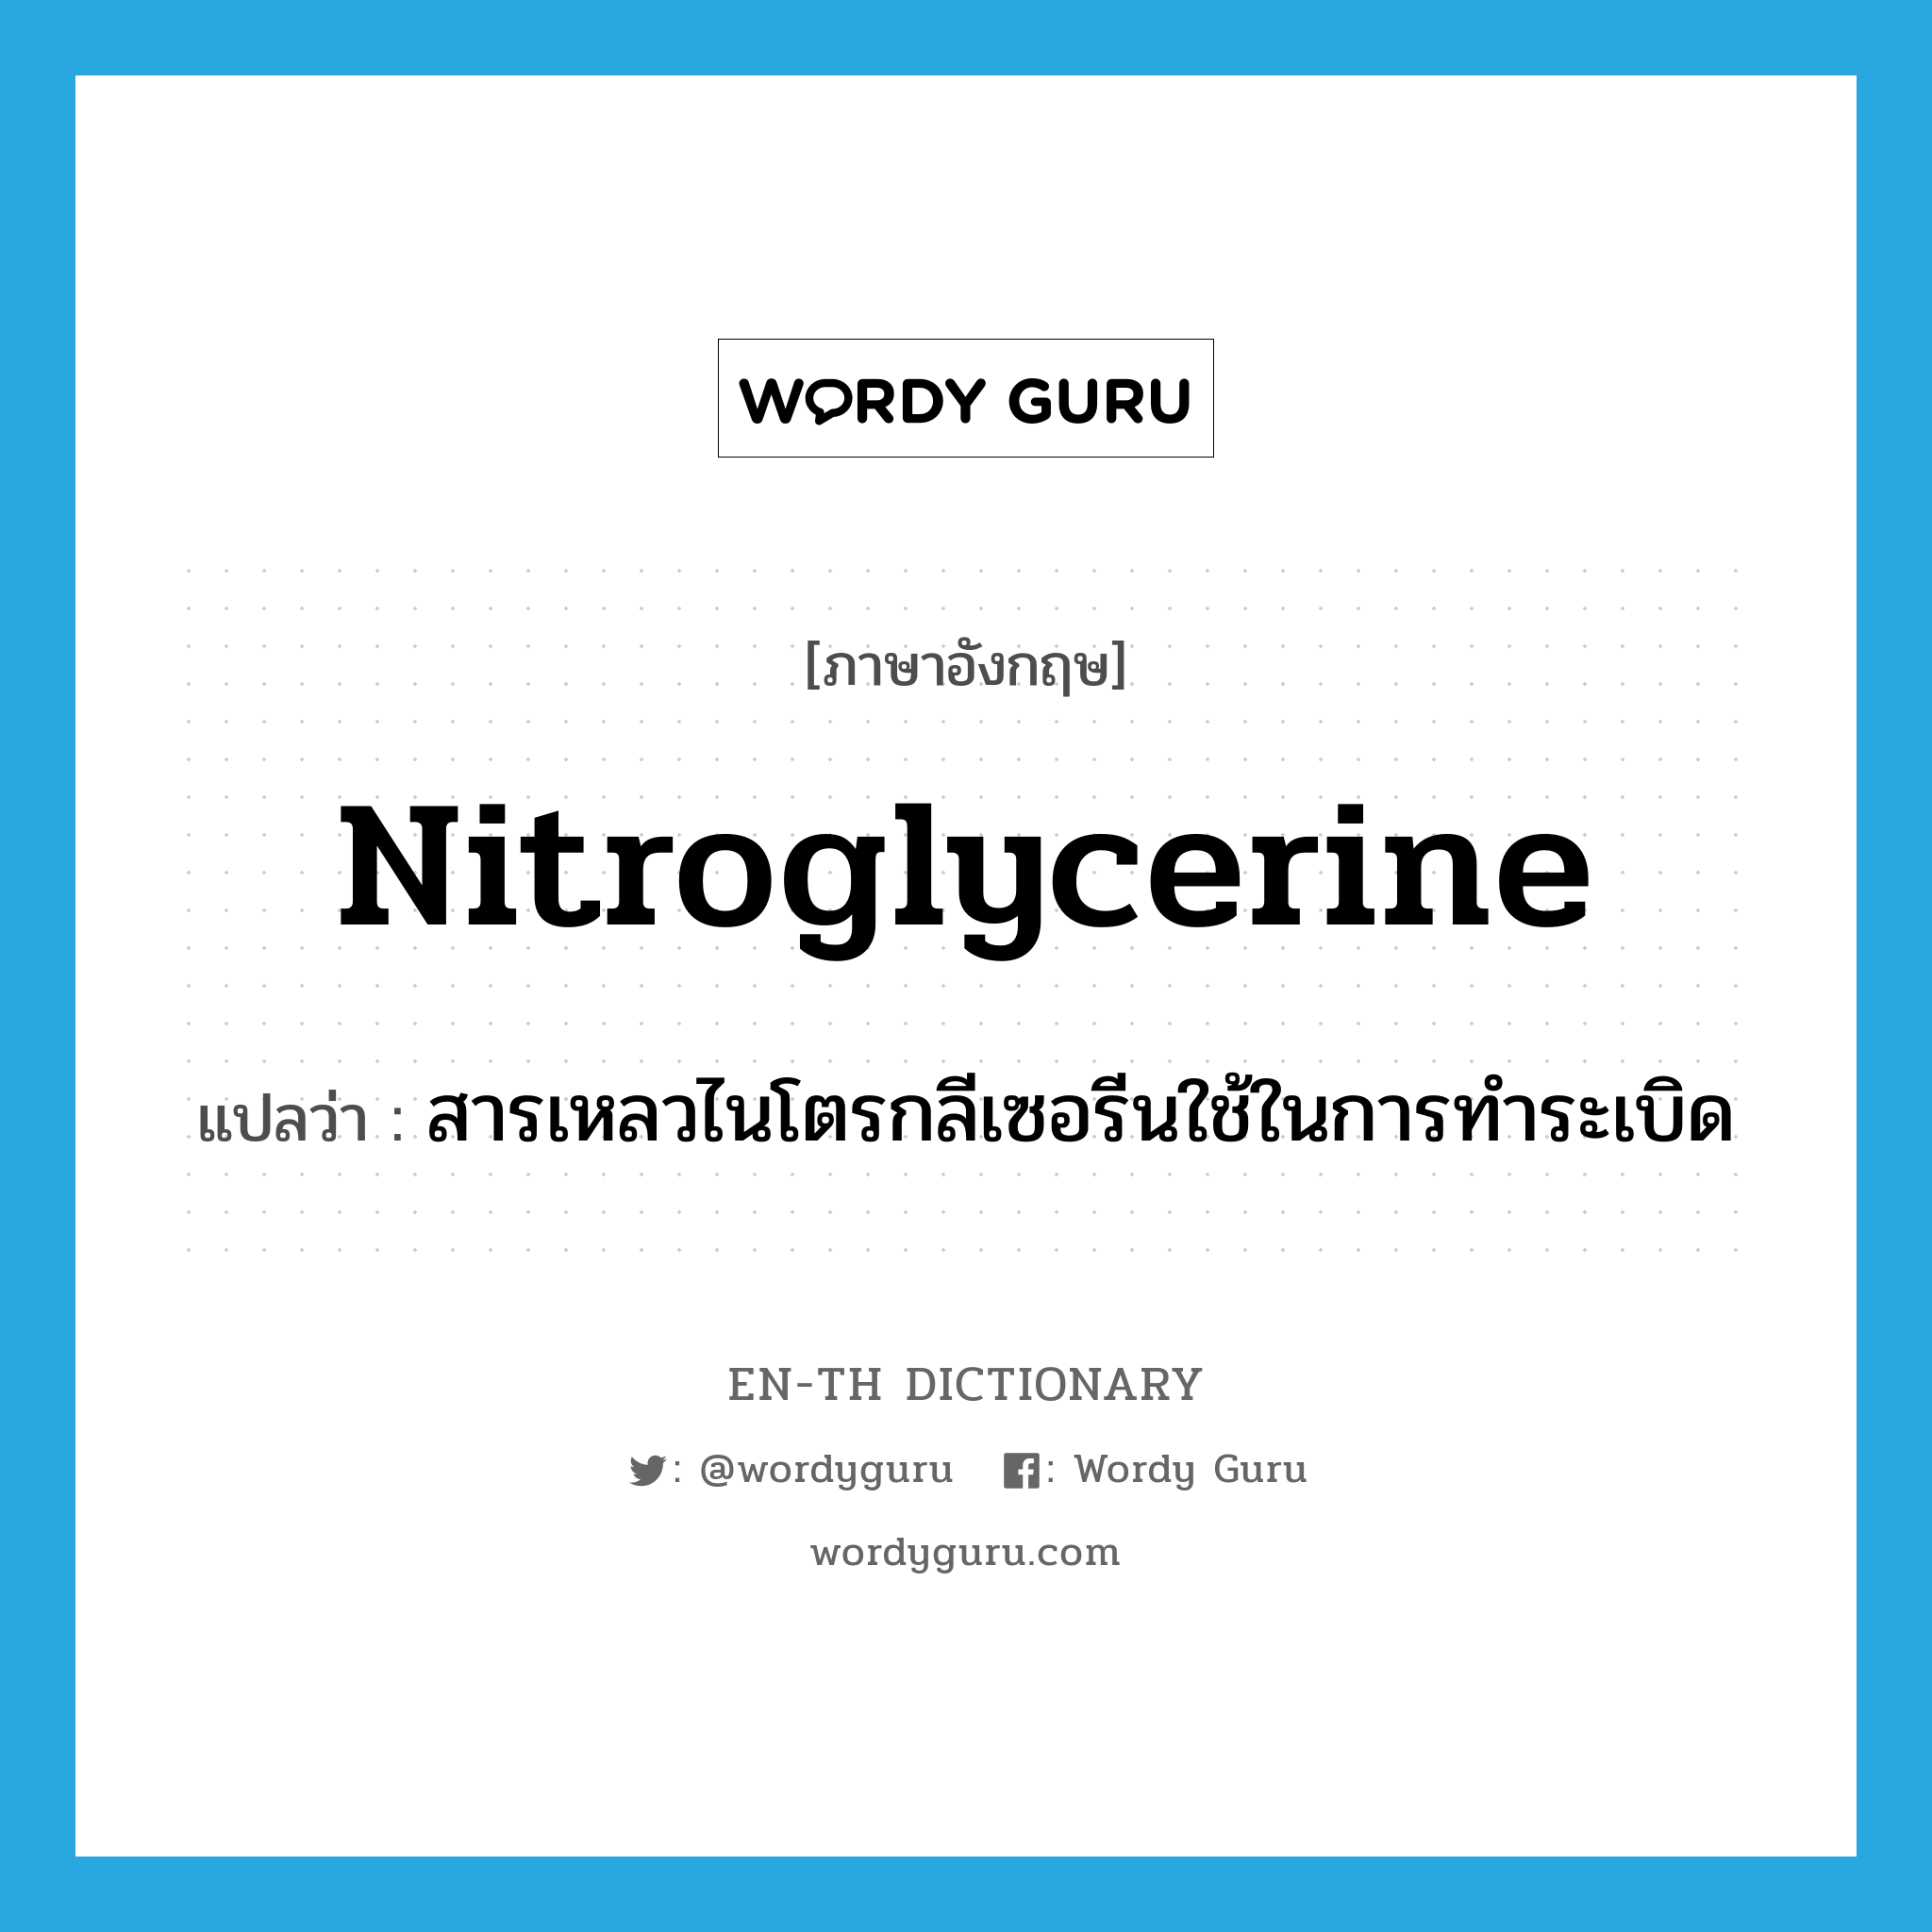 nitroglycerine แปลว่า?, คำศัพท์ภาษาอังกฤษ nitroglycerine แปลว่า สารเหลวไนโตรกลีเซอรีนใช้ในการทำระเบิด ประเภท N หมวด N